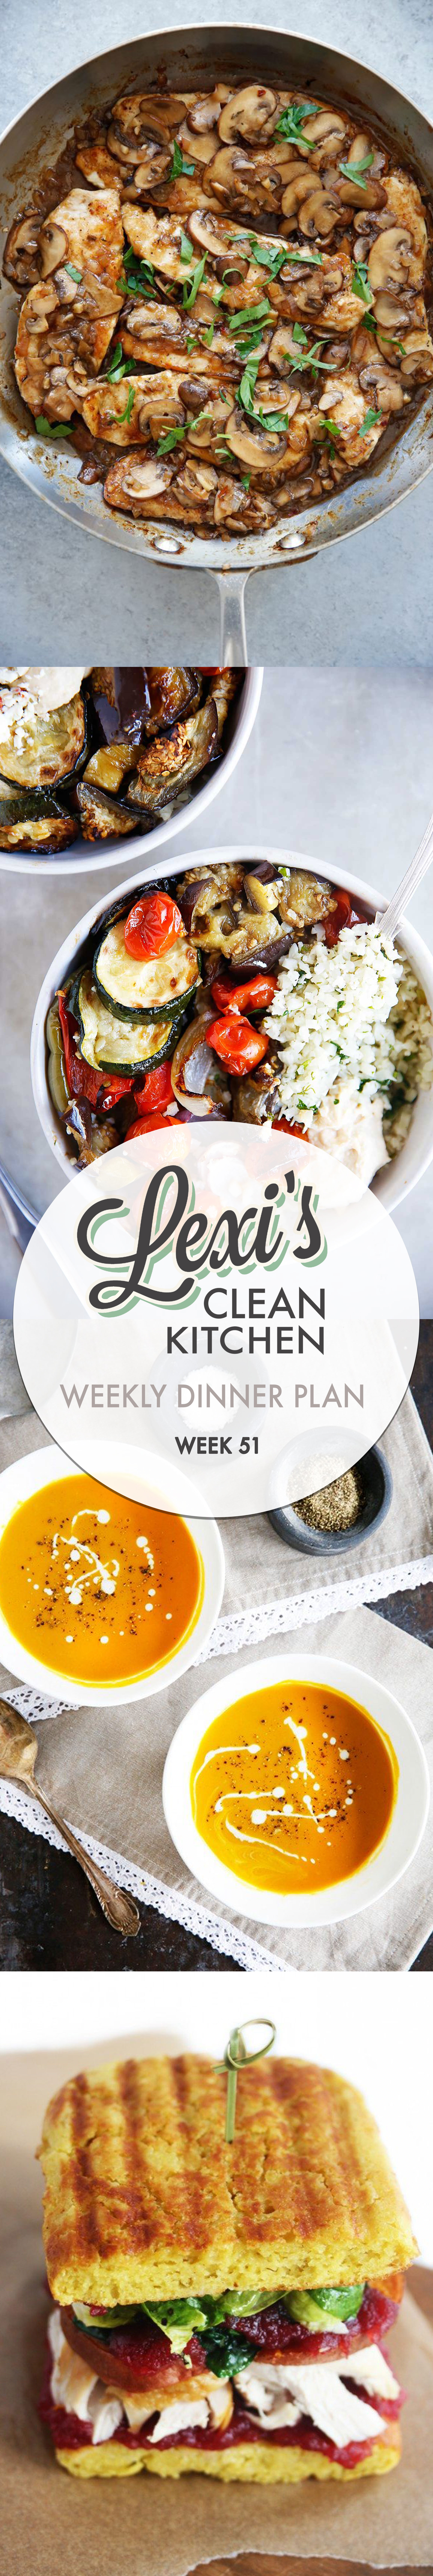 lexi’s weekly dinner plan week 51